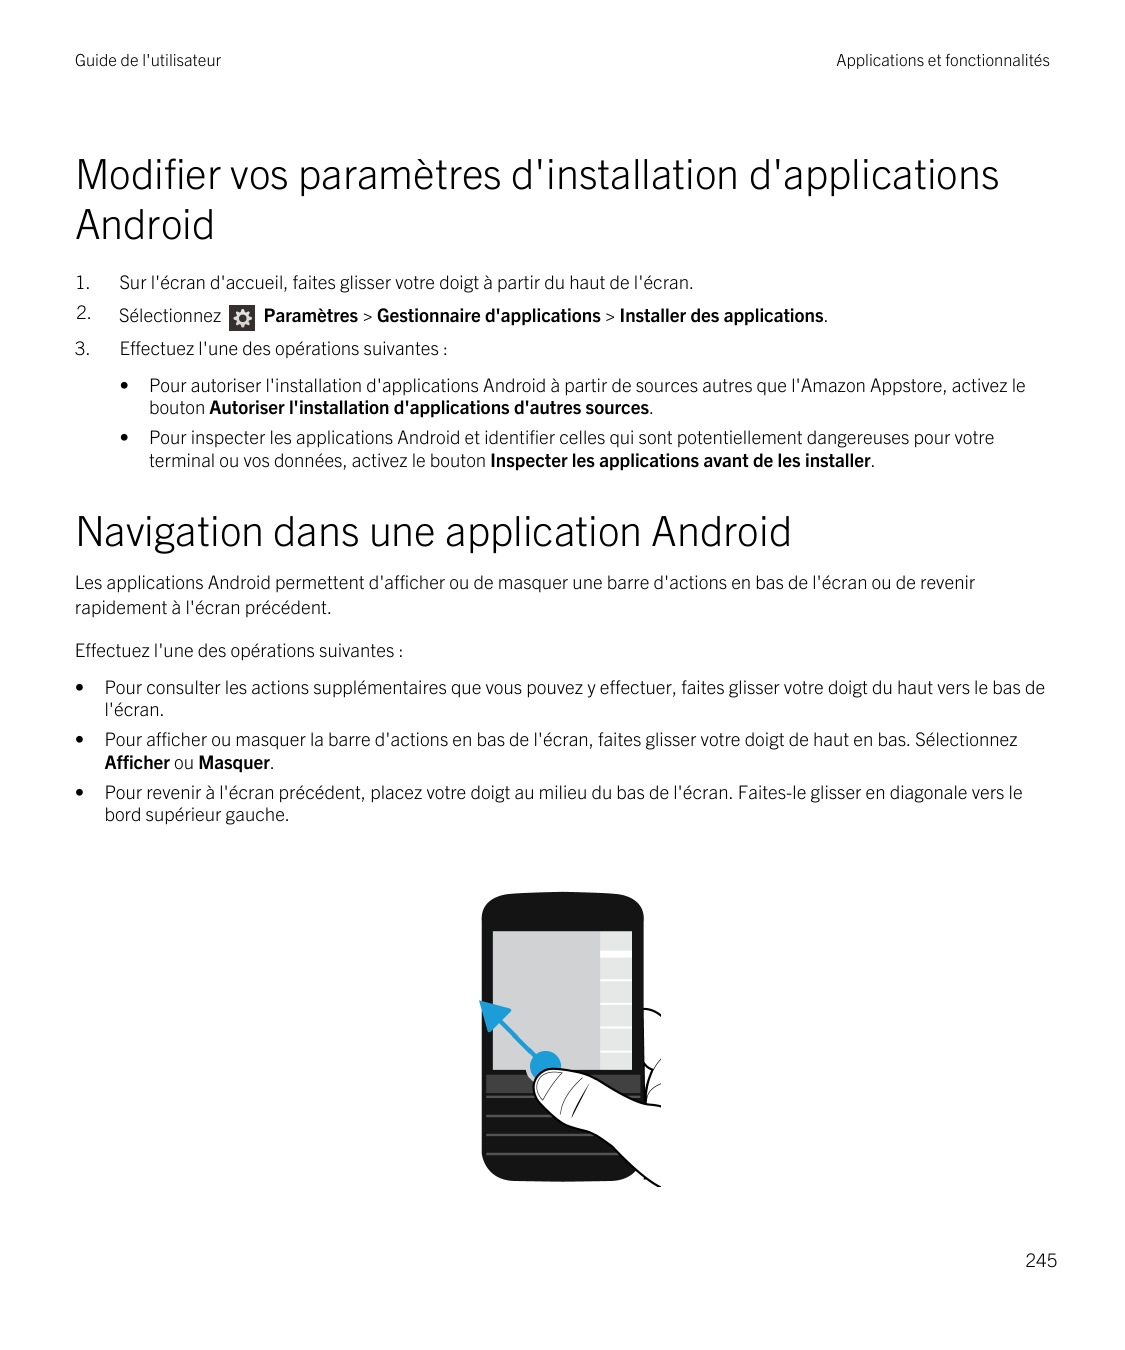 Guide de l'utilisateurApplications et fonctionnalitésModifier vos paramètres d'installation d'applicationsAndroid1.Sur l'écran d